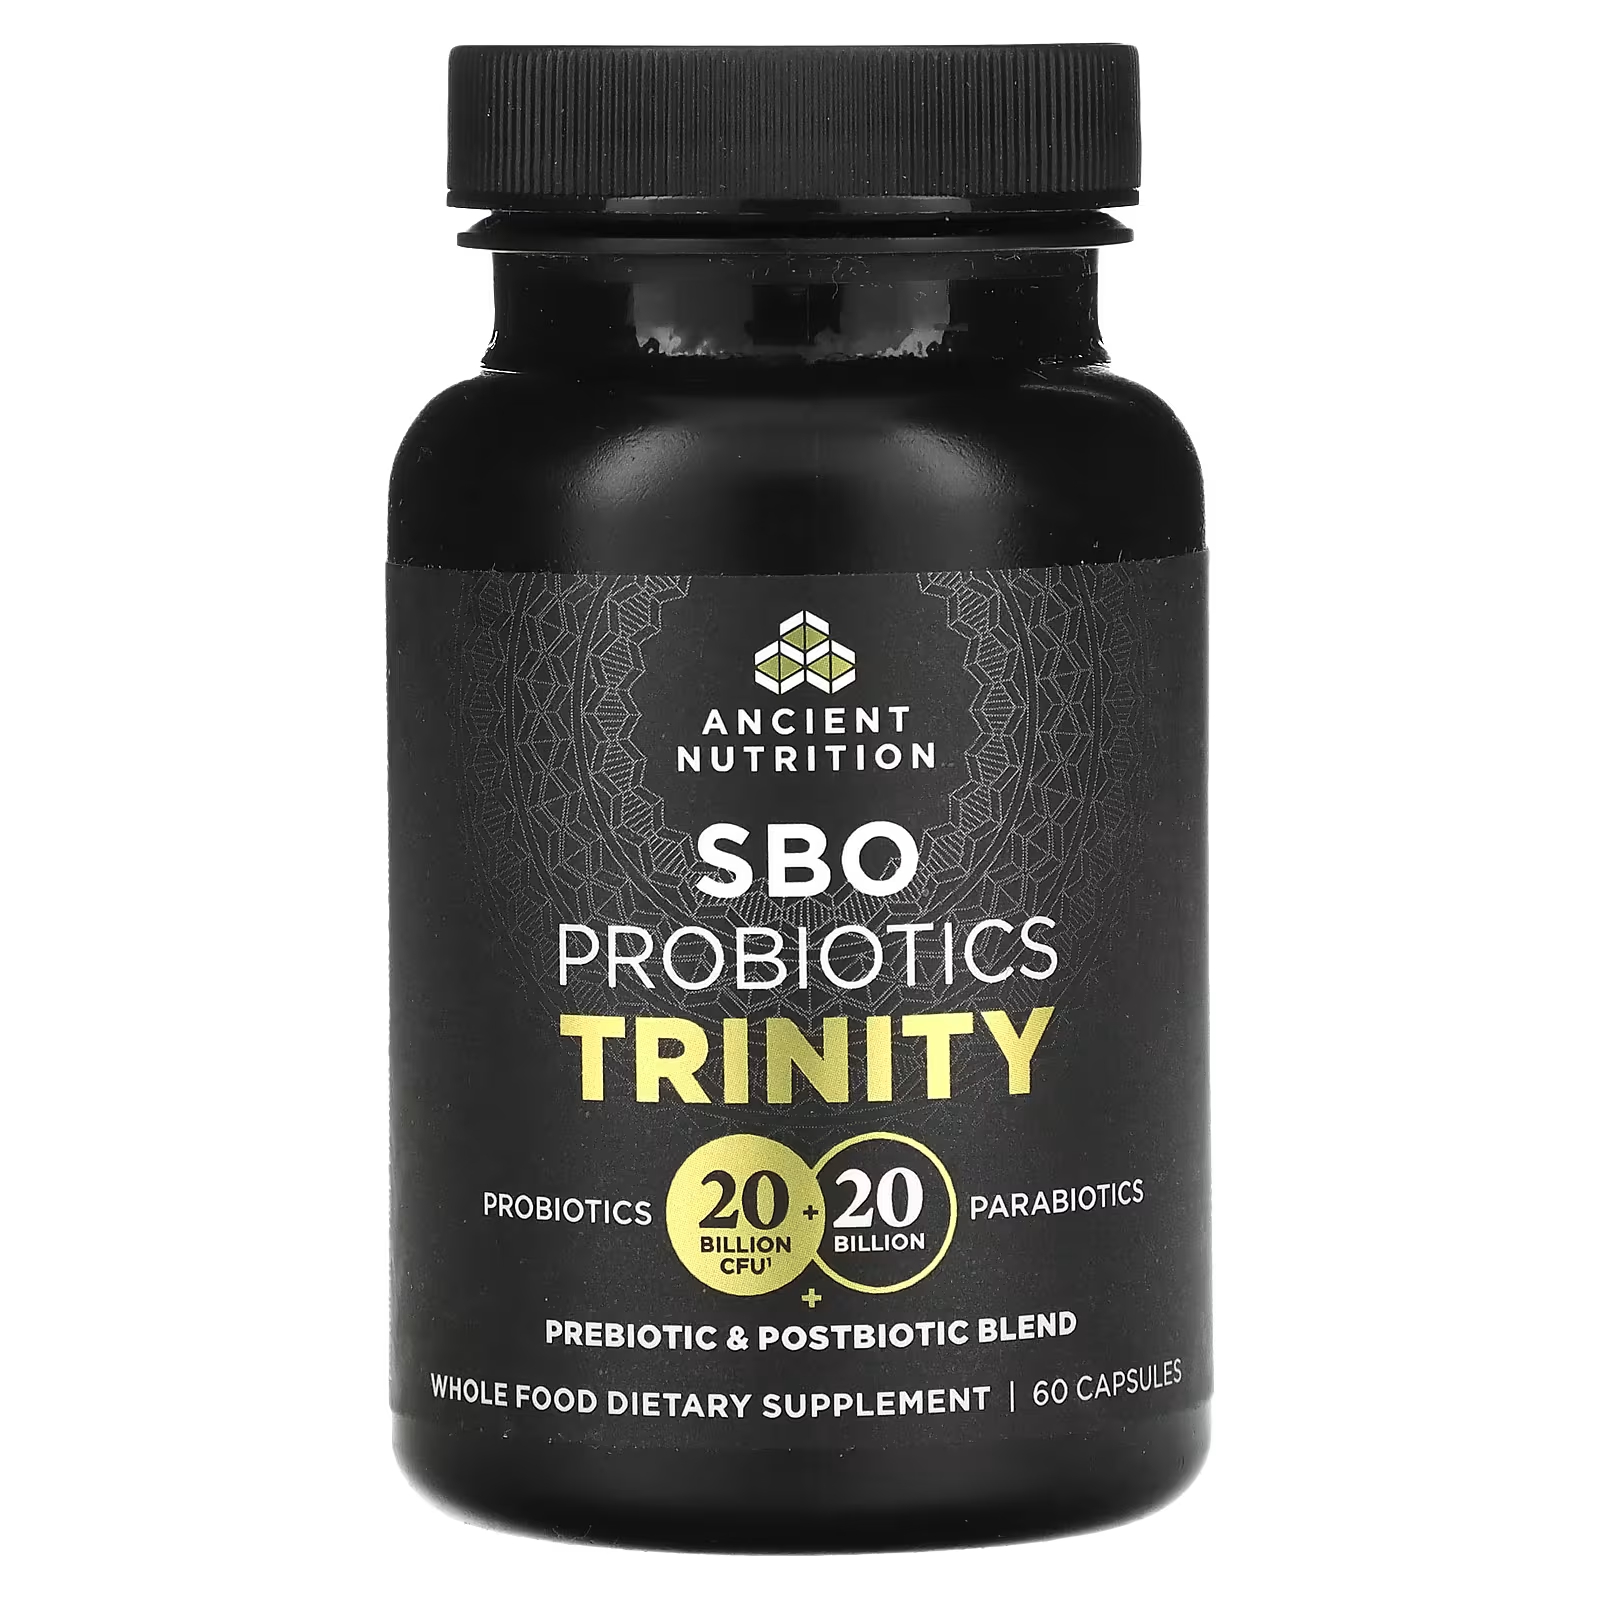 Пробиотик Ancient Nutrition SBO Trinity, 60 капсул пробиотики ancient nutrition повышенной силы 60 капсул